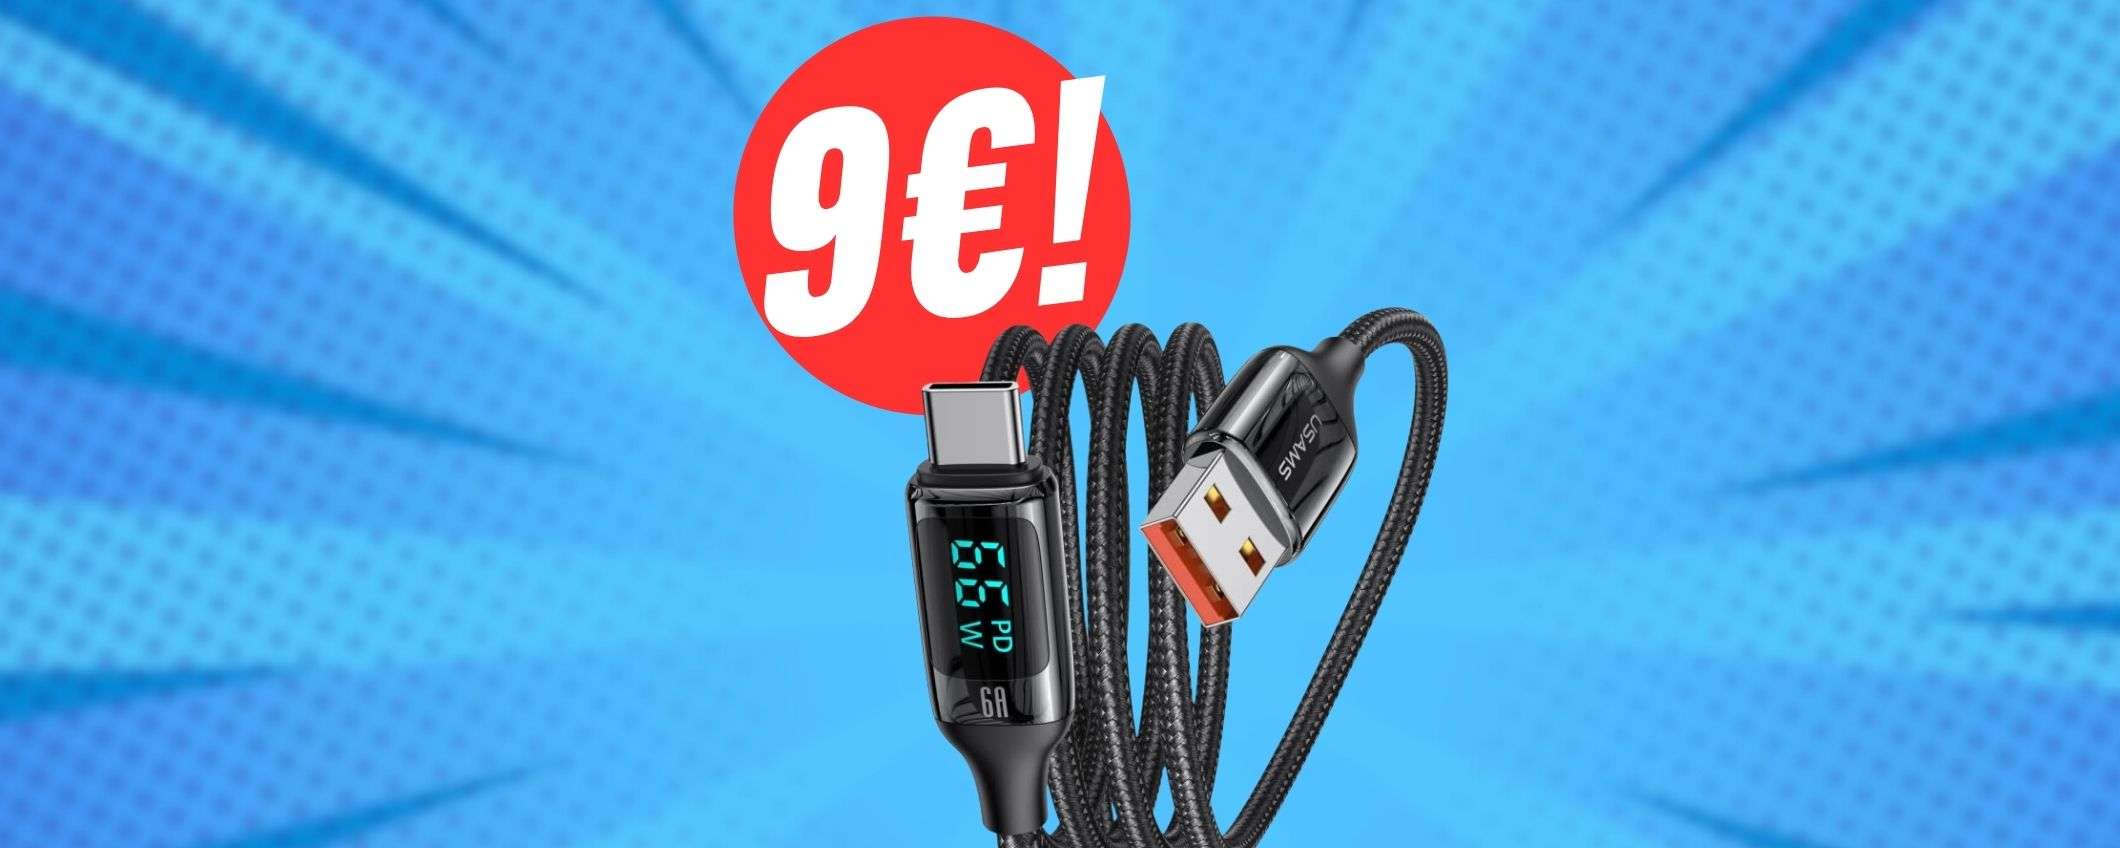 Questo cavo USB-C ha lo SCHERMO e costa solo 9€!